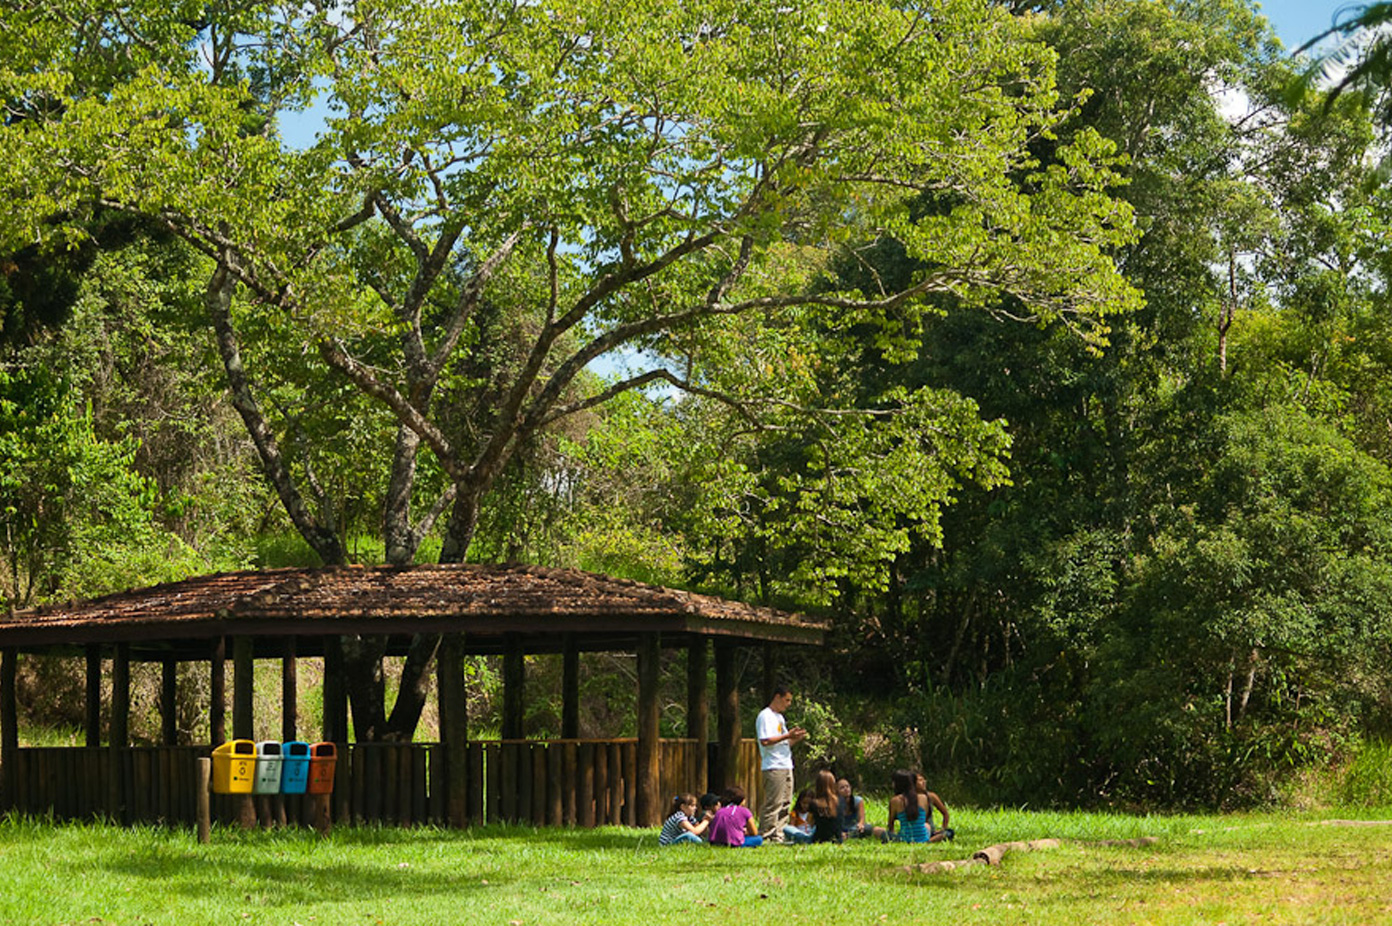 Crianças sentadas em roda em um campo recebendo aula de um professor em pé. Ao fundo, um quiosque de madeira